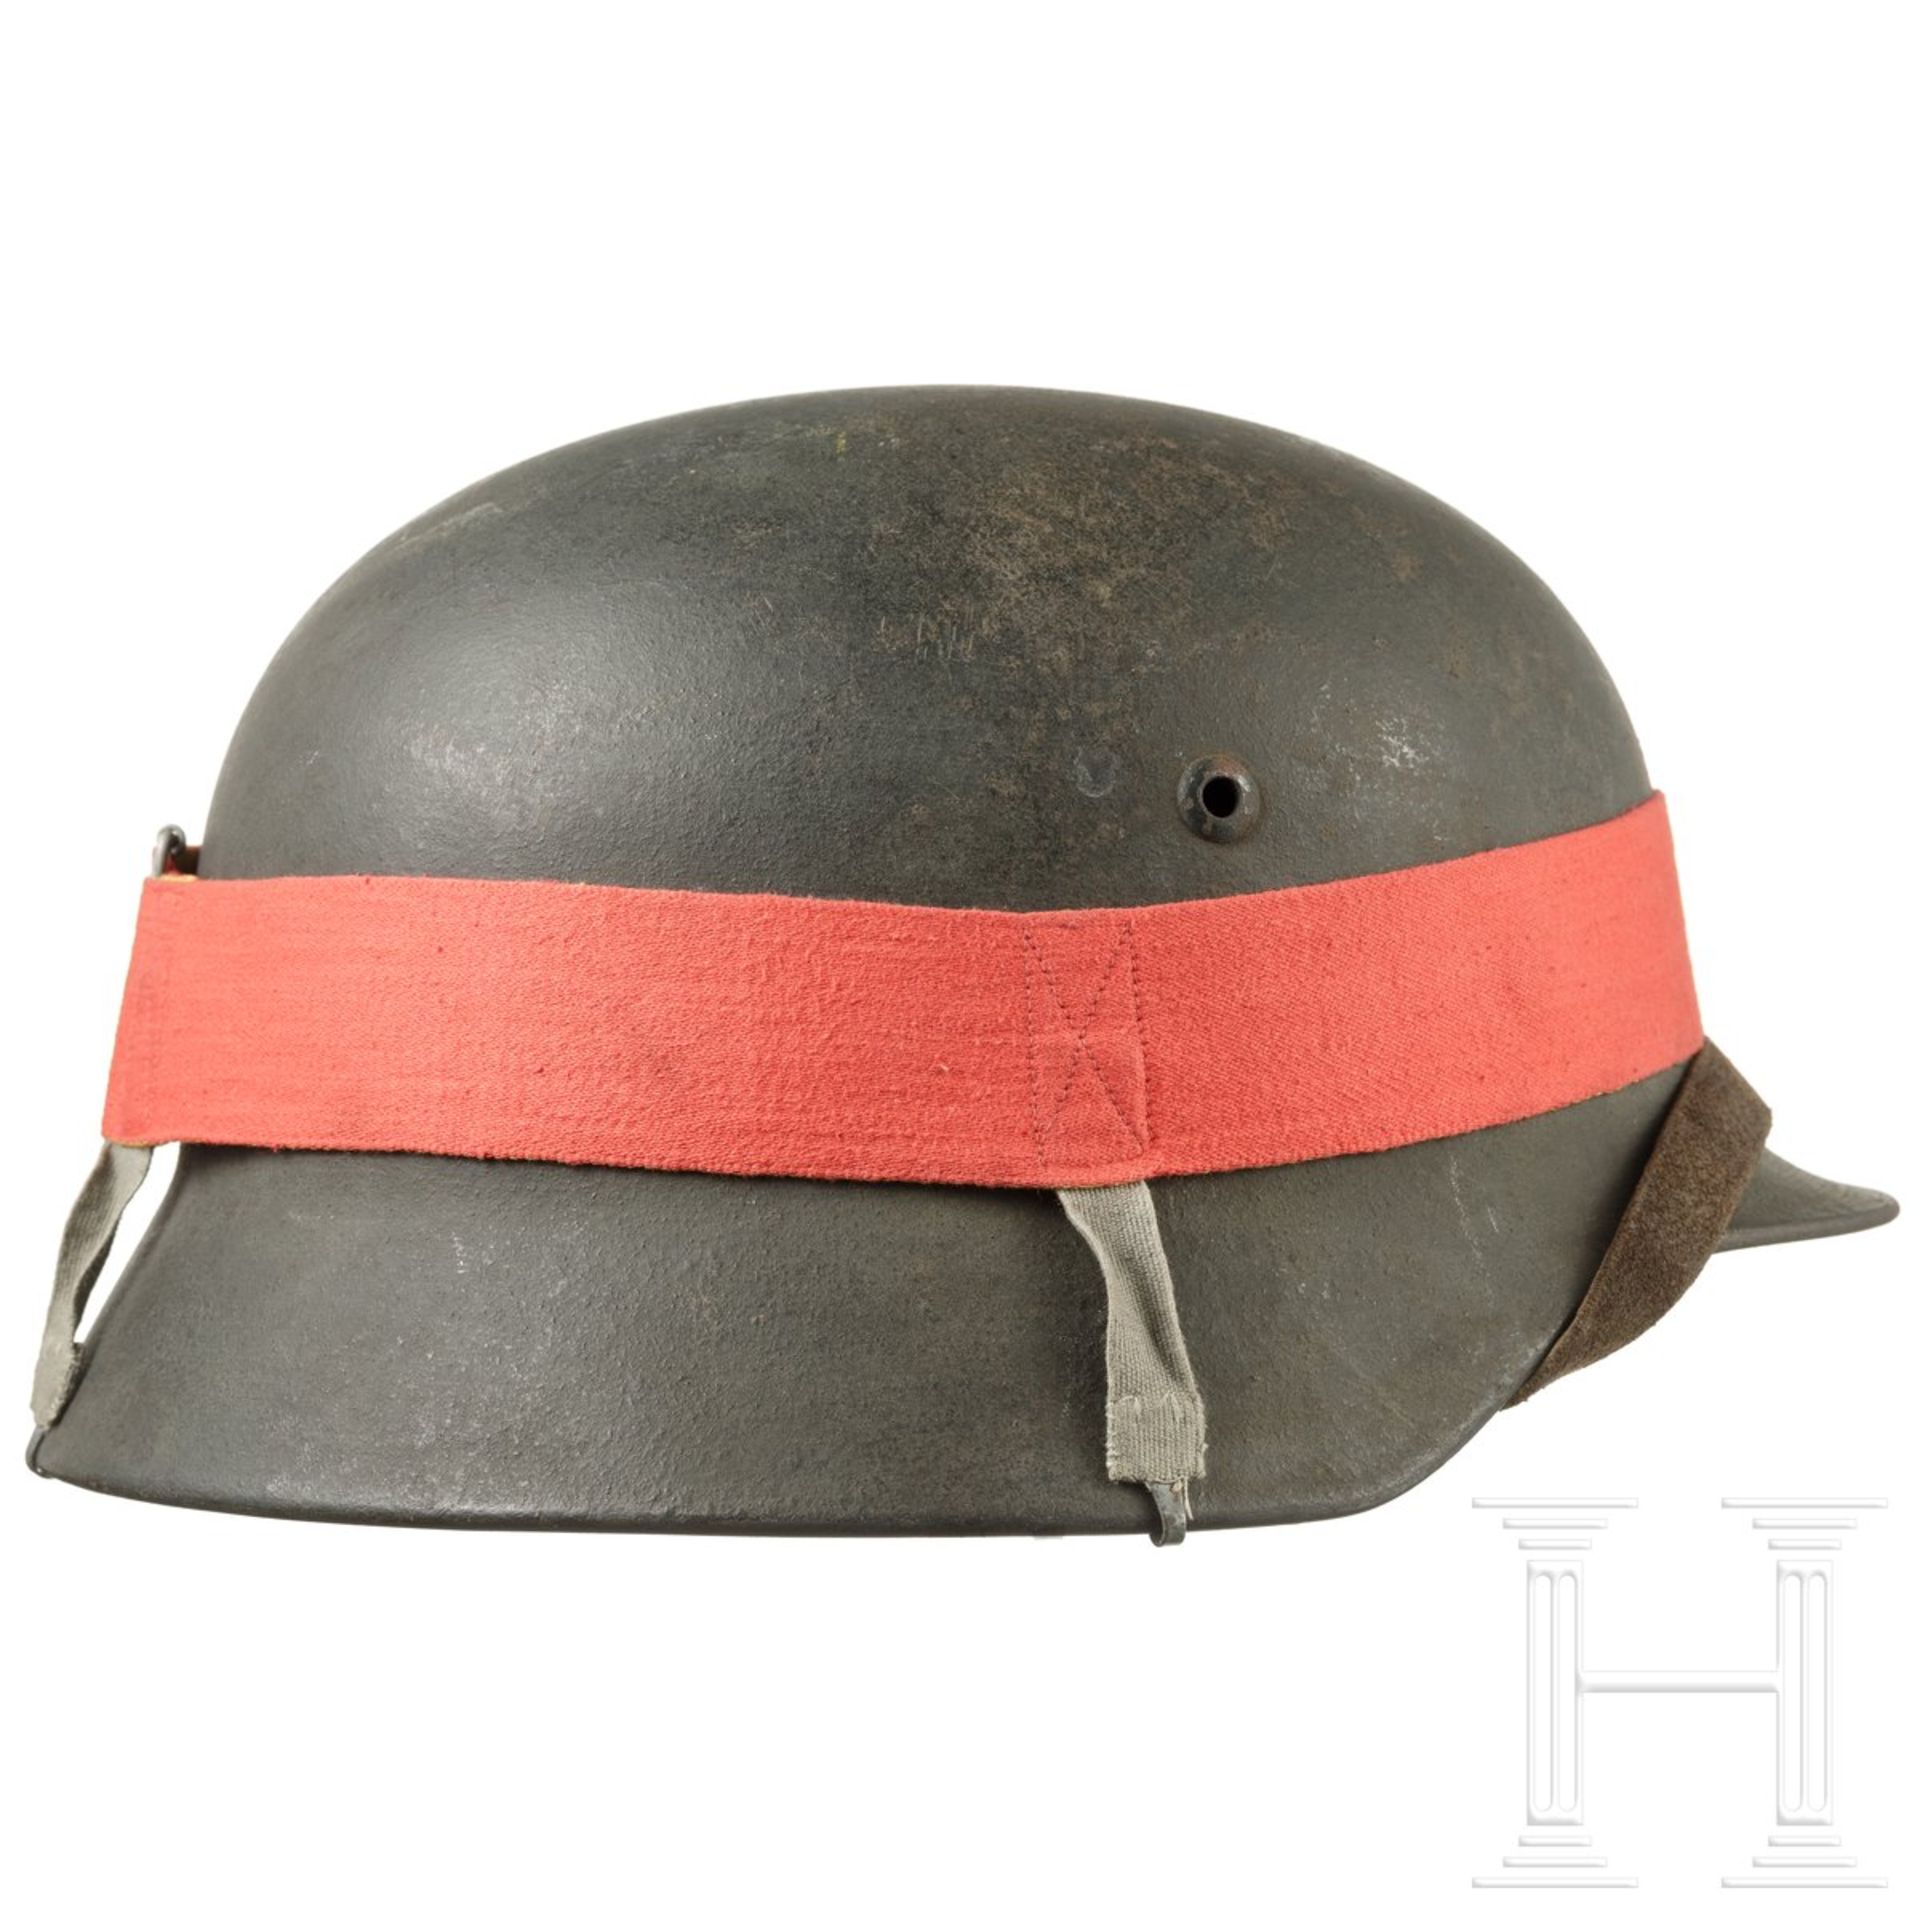 Stahlhelm M 35 mit Manöverband, deutsch, 1935 - 1945 - Bild 2 aus 6